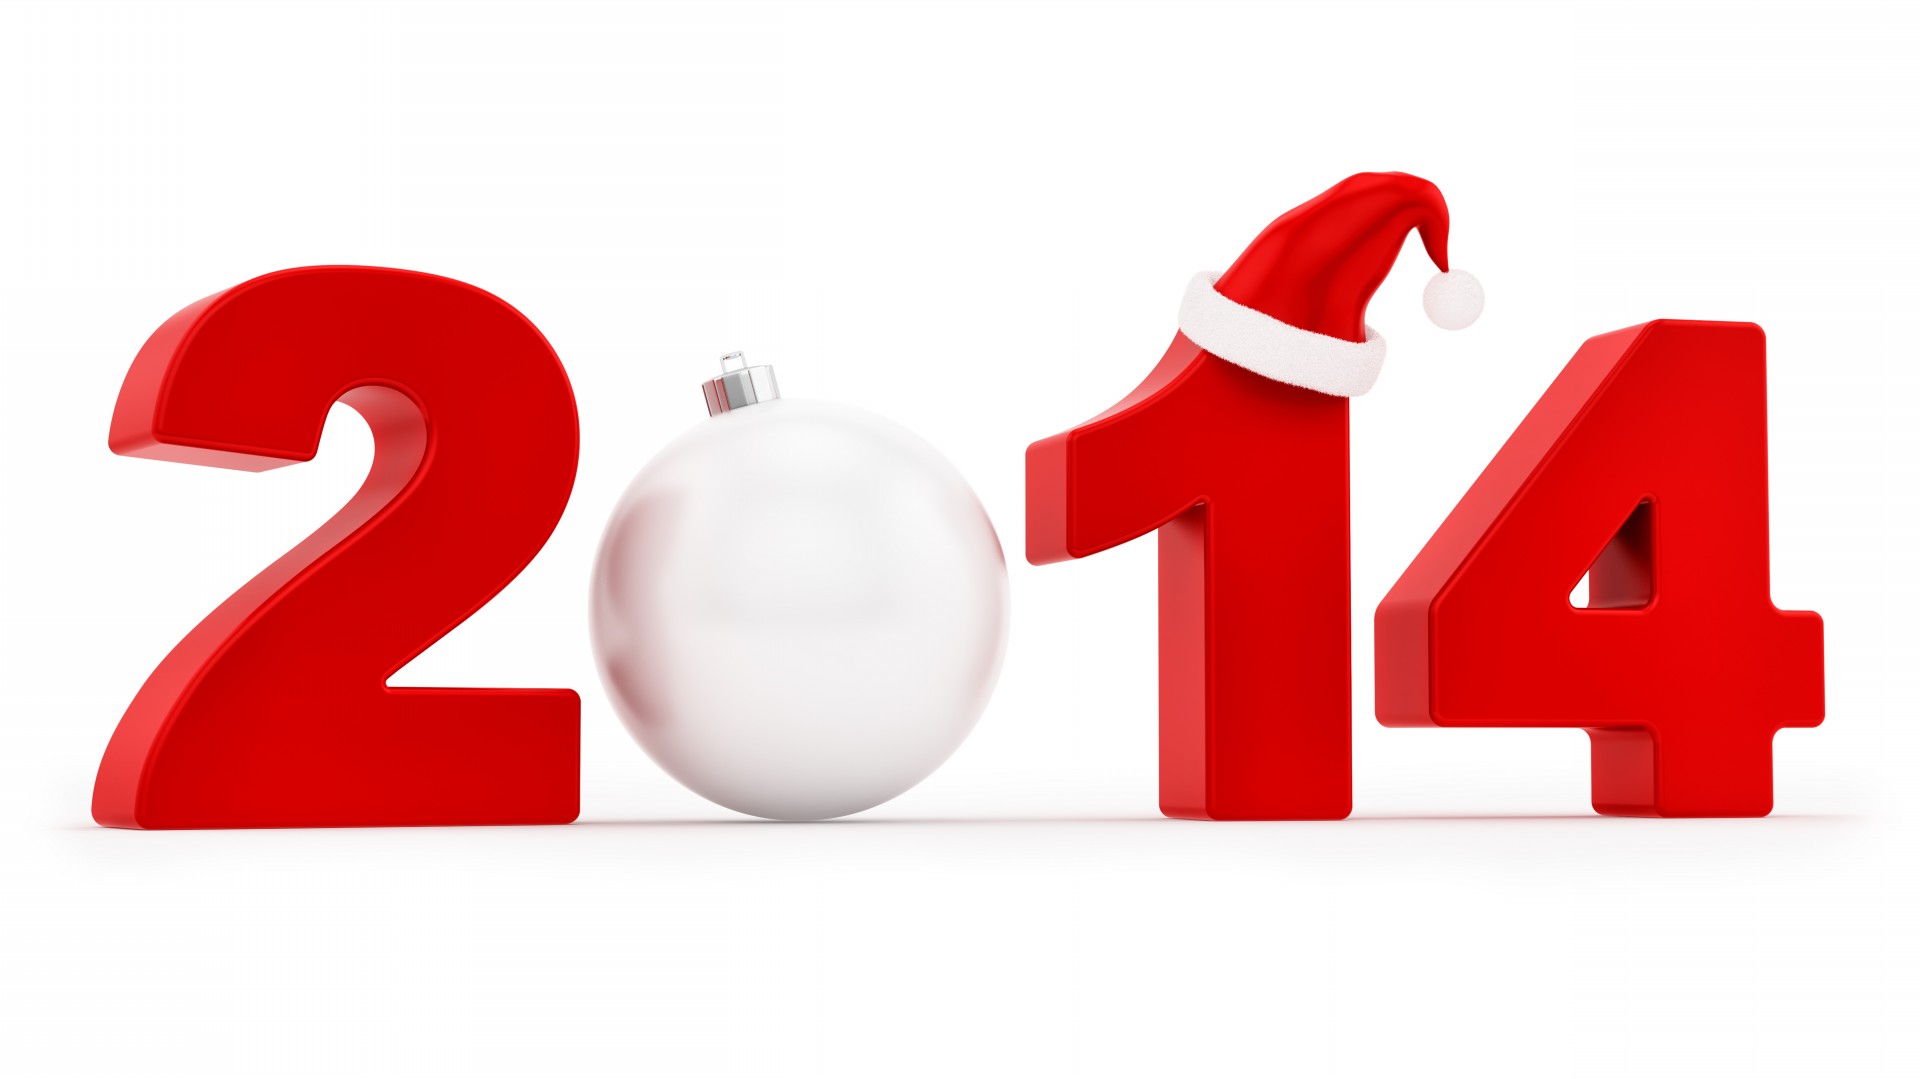 أجمل صور وبطاقات التهنئة بالعام الجديد 2014 خلفيات رأس السنة الجديدة 115